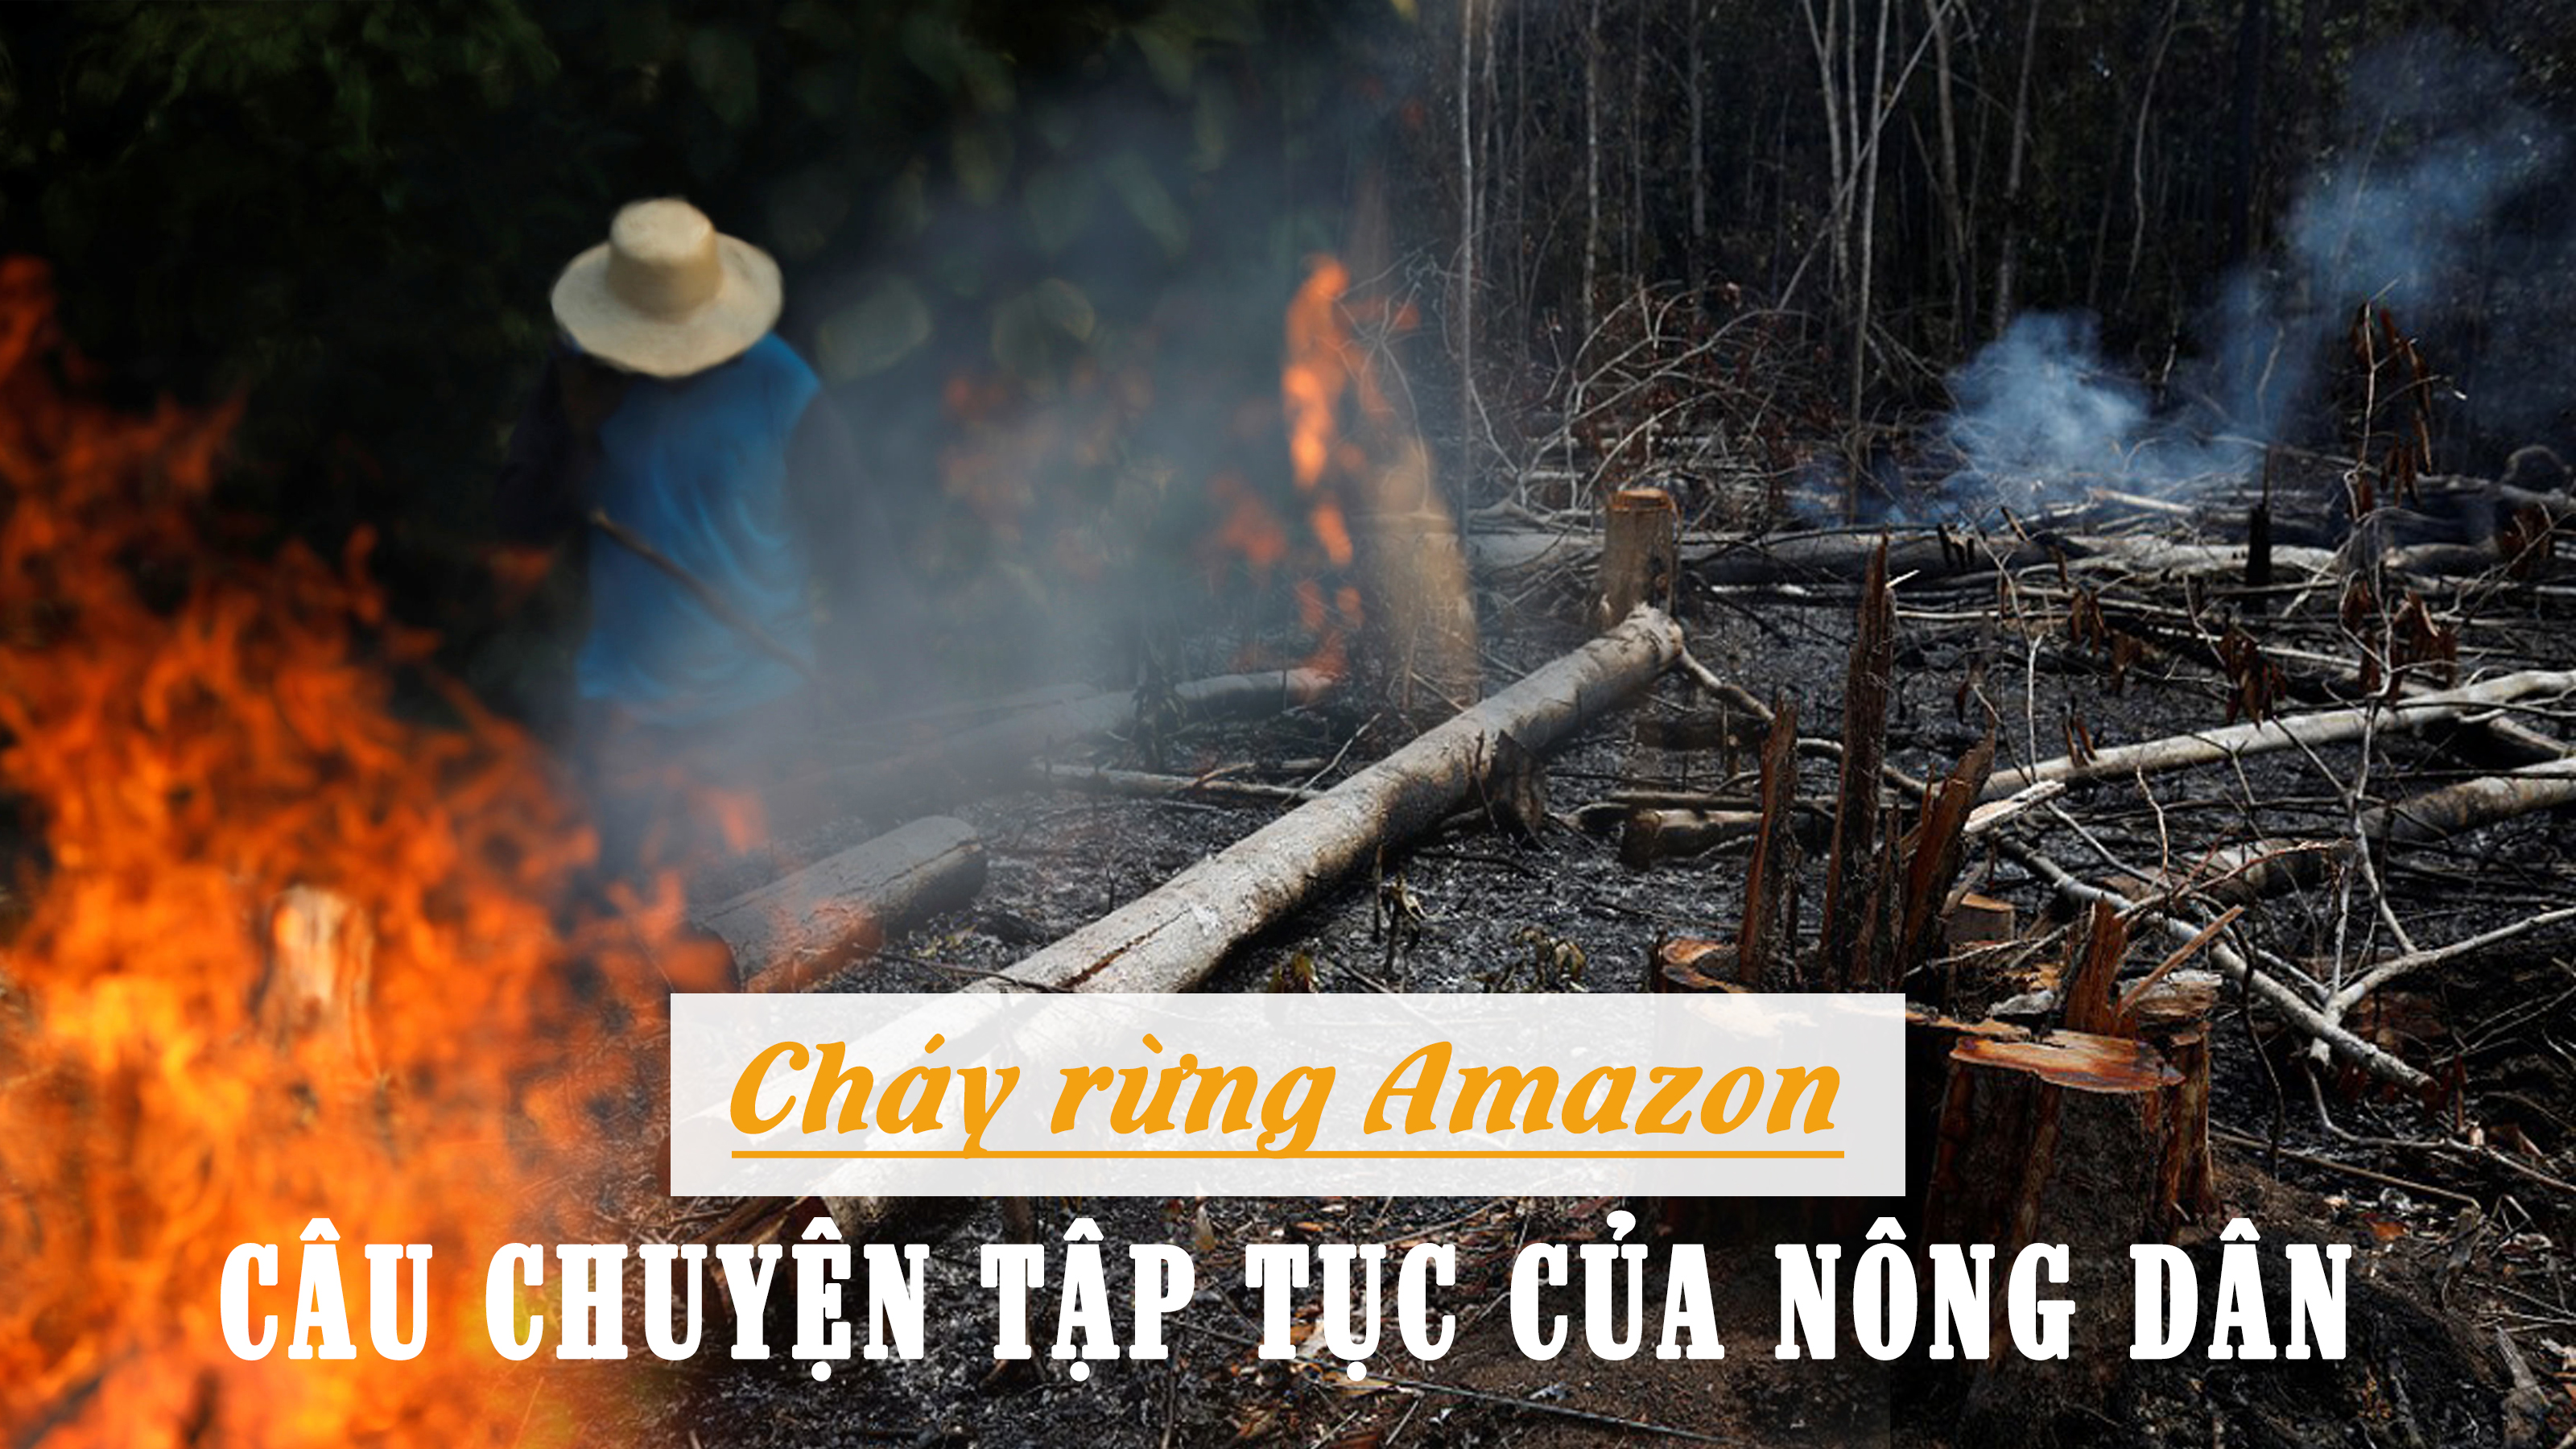 Cháy rừng Amazon và câu chuyện tập tục của nông dân